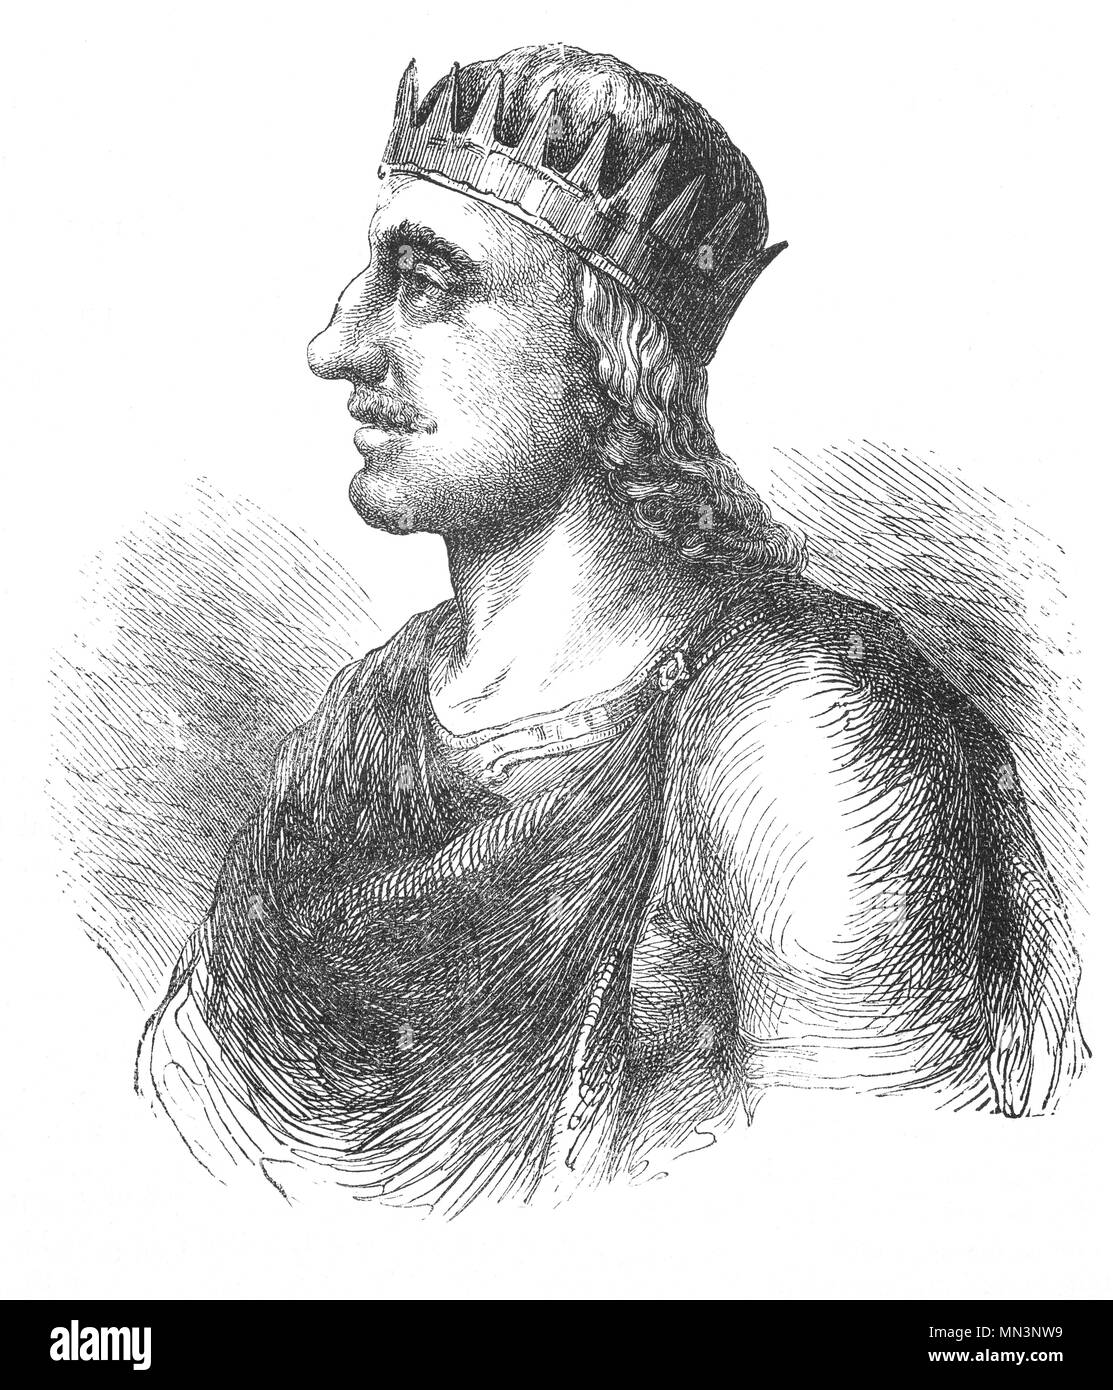 Ecgberht (77-839), anche ortografato Egbert, Ecgbert o Ecgbriht, era il re del Wessex dal 802 fino alla sua morte nel 839. Poco è noto dei primi venti anni di Ecgberht il suo regno, ma si pensa che egli è stato in grado di mantenere l'indipendenza di Wessex contro il regno di mercia, che a quel tempo dominato il sud altri regni in inglese. In 825 Ecgberht sconfitto Beornwulf di mercia, temporaneamente pregiudiziale Mercia direttamente. Egli era tuttavia in grado di mantenere questa posizione dominante, e entro un anno ha perso il trono di mercia, ma mantenuto il controllo del Kent, Sussex e Surrey. Foto Stock